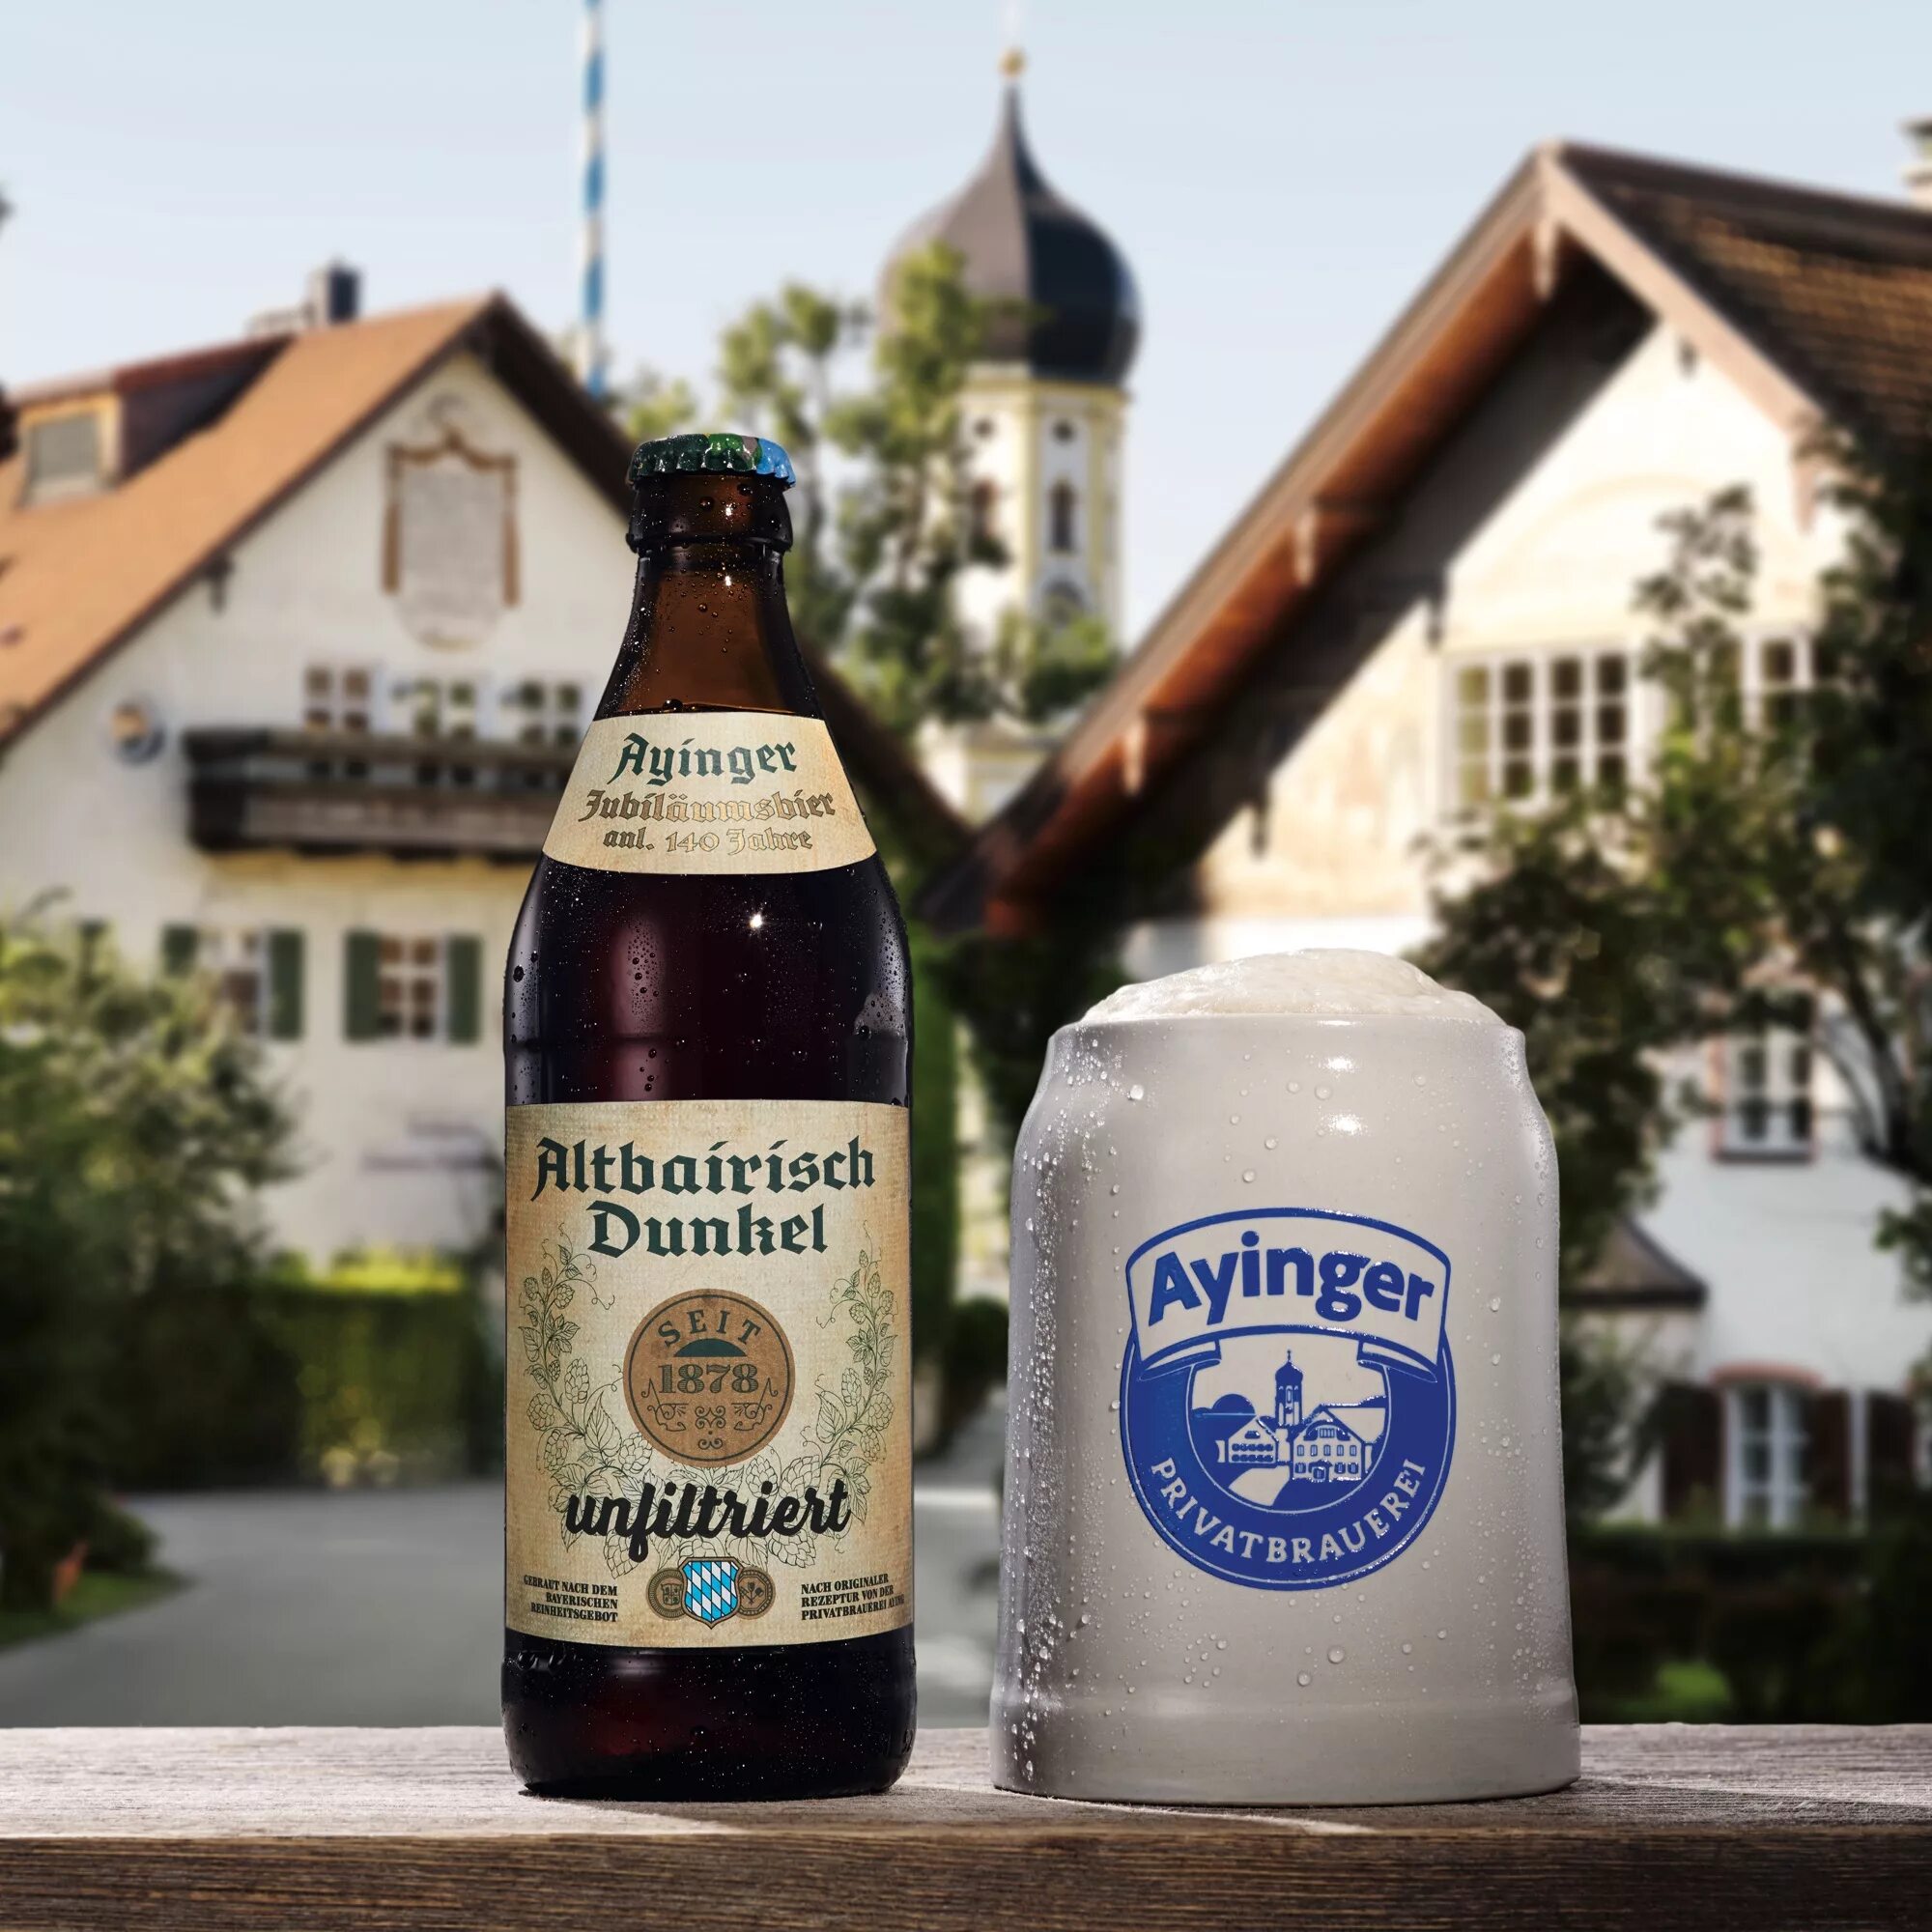 Пиво ayinger купить. / Ayinger Altbairisch dunkel Unfiltriert (0,5 л.). Немецкое пиво Ayinger. Пиво Altbairisch dunkel. Айнгер Дюнкель.